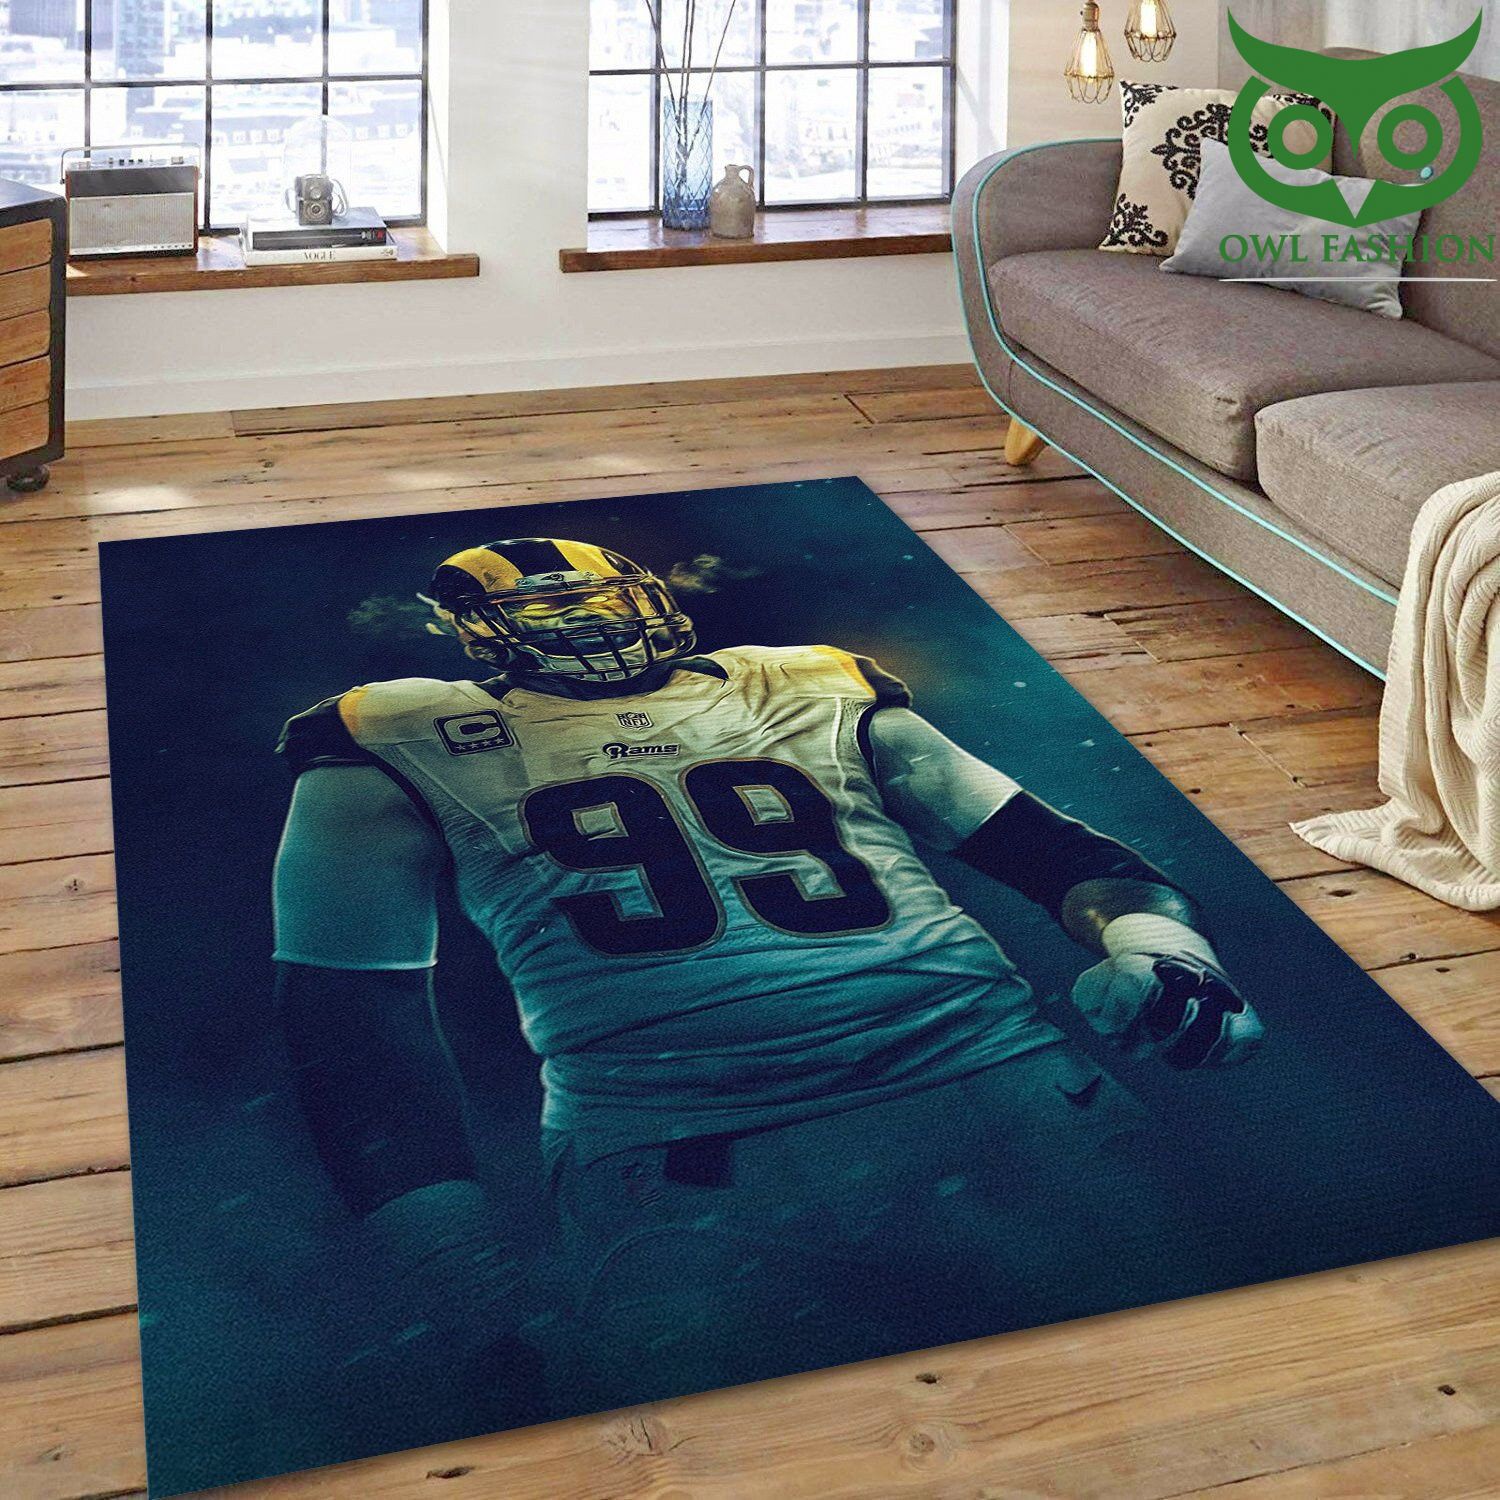 50 La Rams Aaron Donald 99 NFL house decoration carpet rug